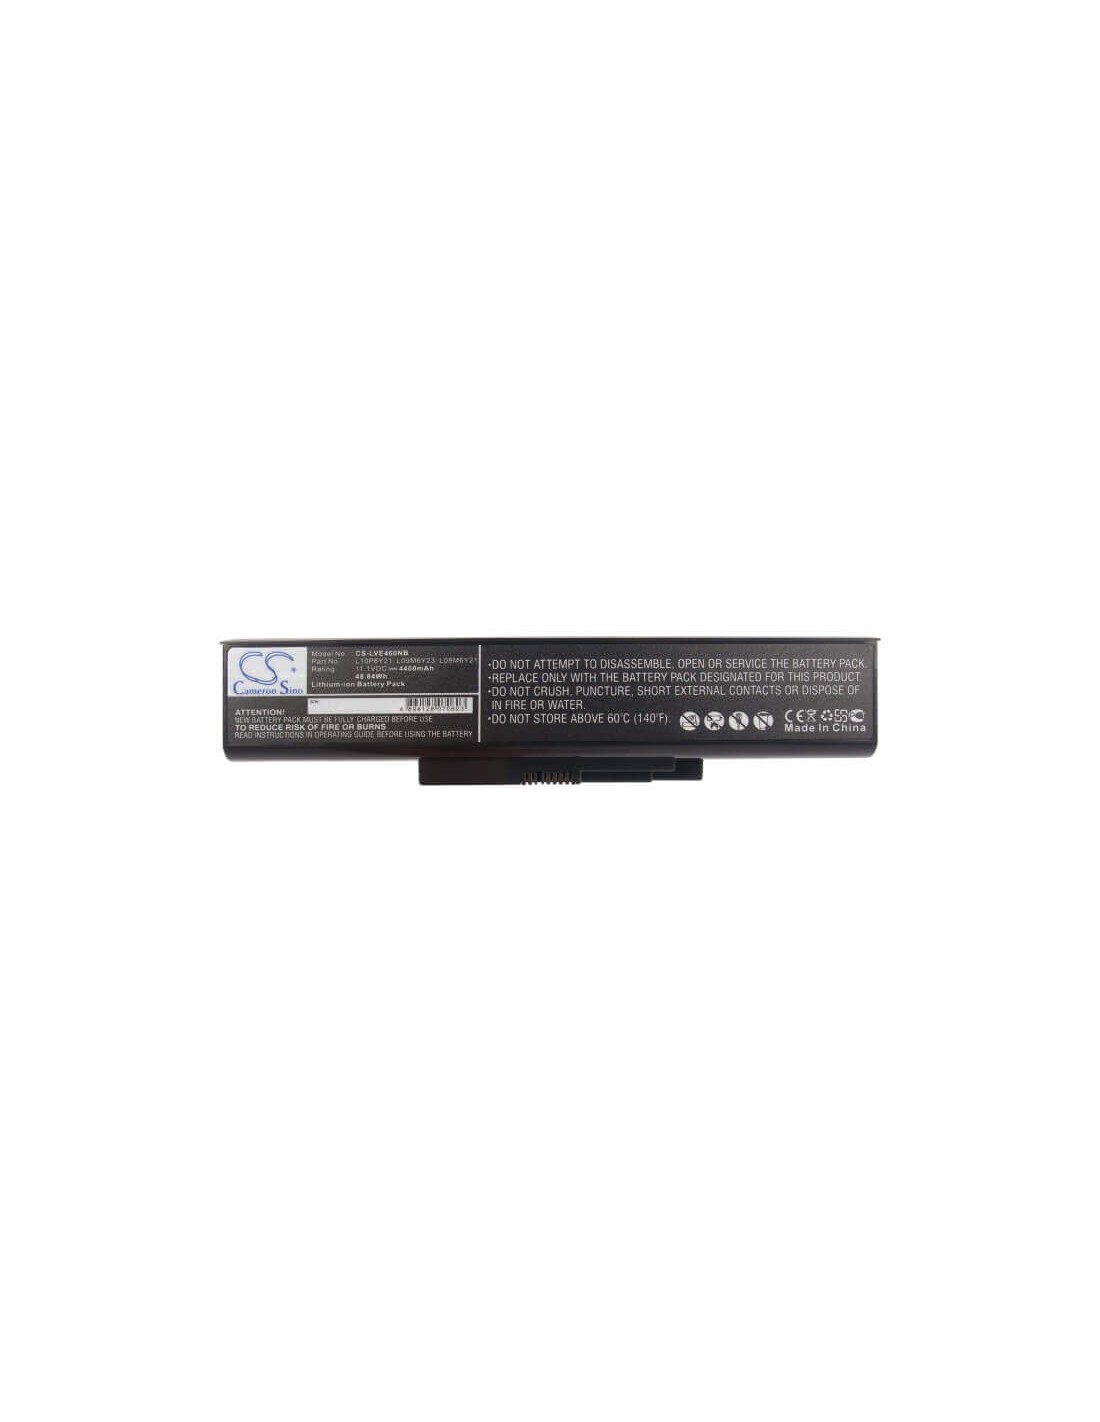 Black Battery for Lenovo E46, E46a, E46g 11.1V, 4400mAh - 48.84Wh